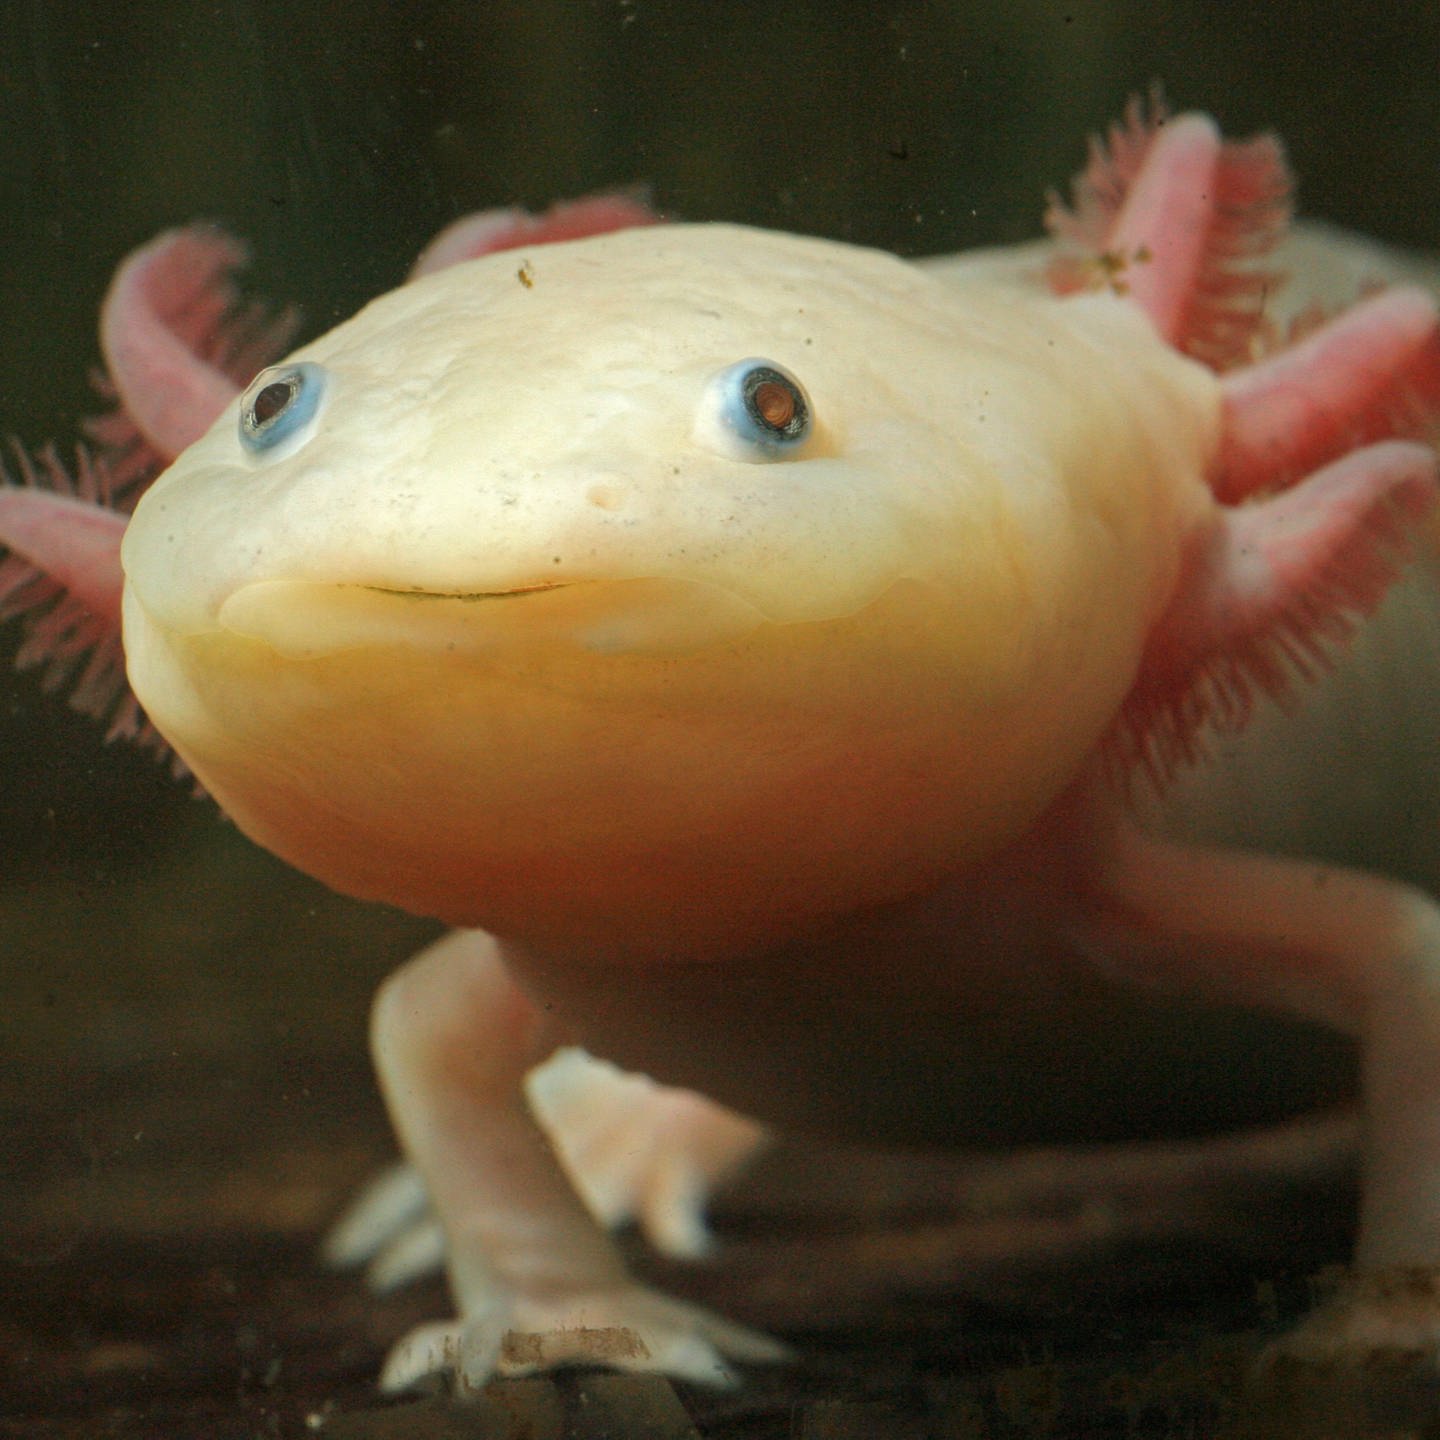 Axolotl - Alles zur erfolgreichen Zucht und Haltung